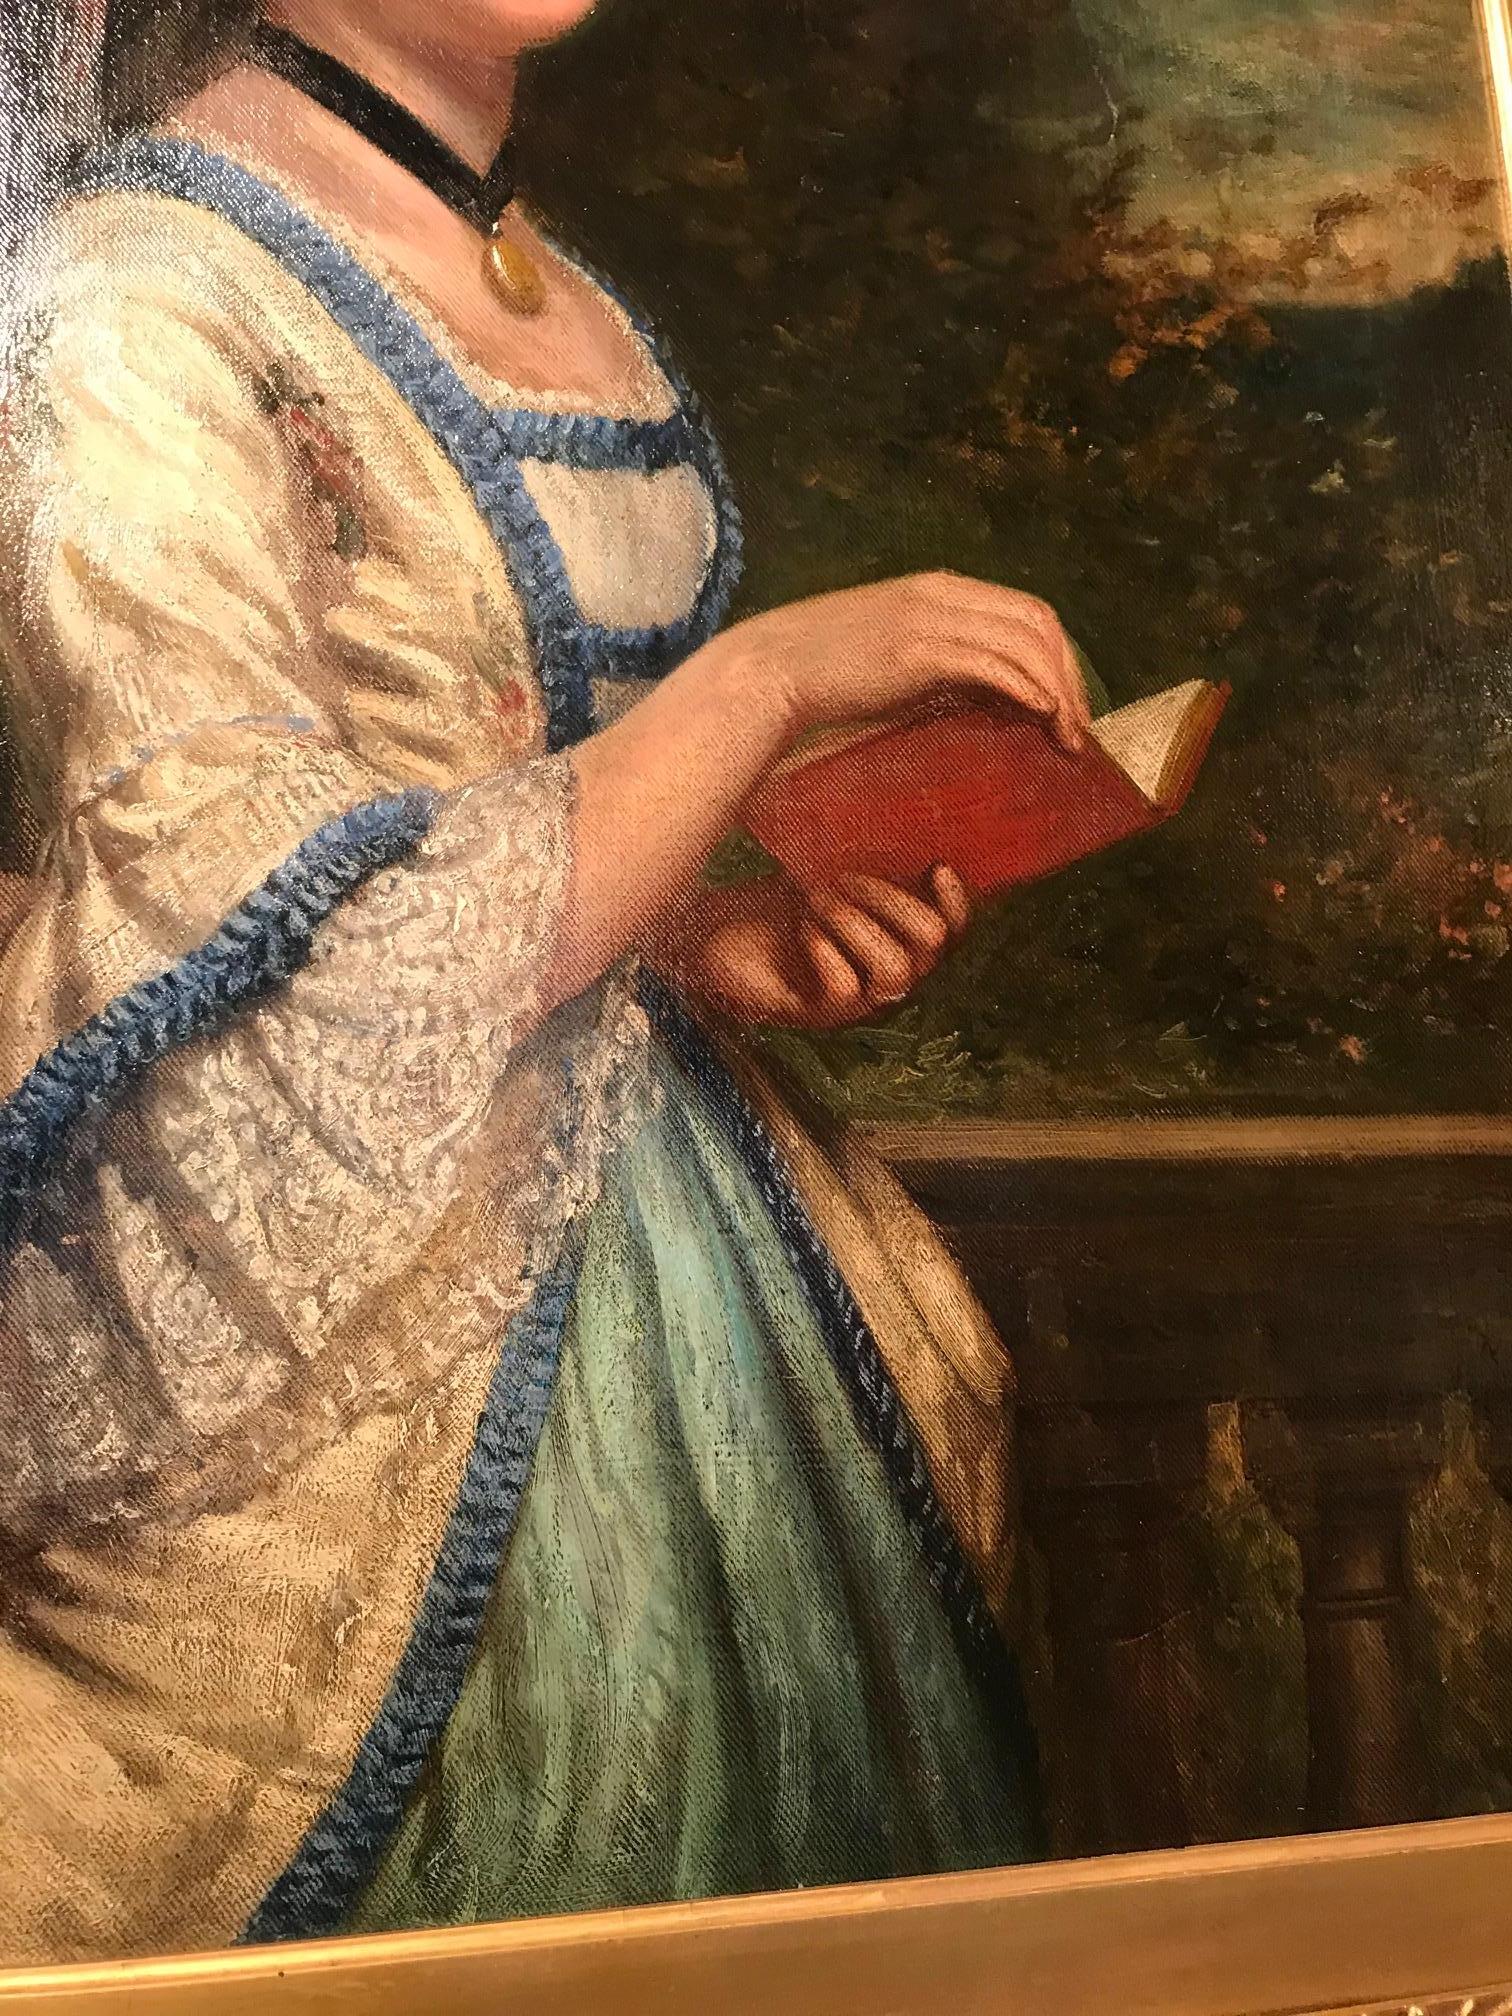 öl auf Leinwand, 19. Jahrhundert, Porträt einer lesenden Dame in einer neoklassizistischen Gartenszene.
Vorzeichenlos